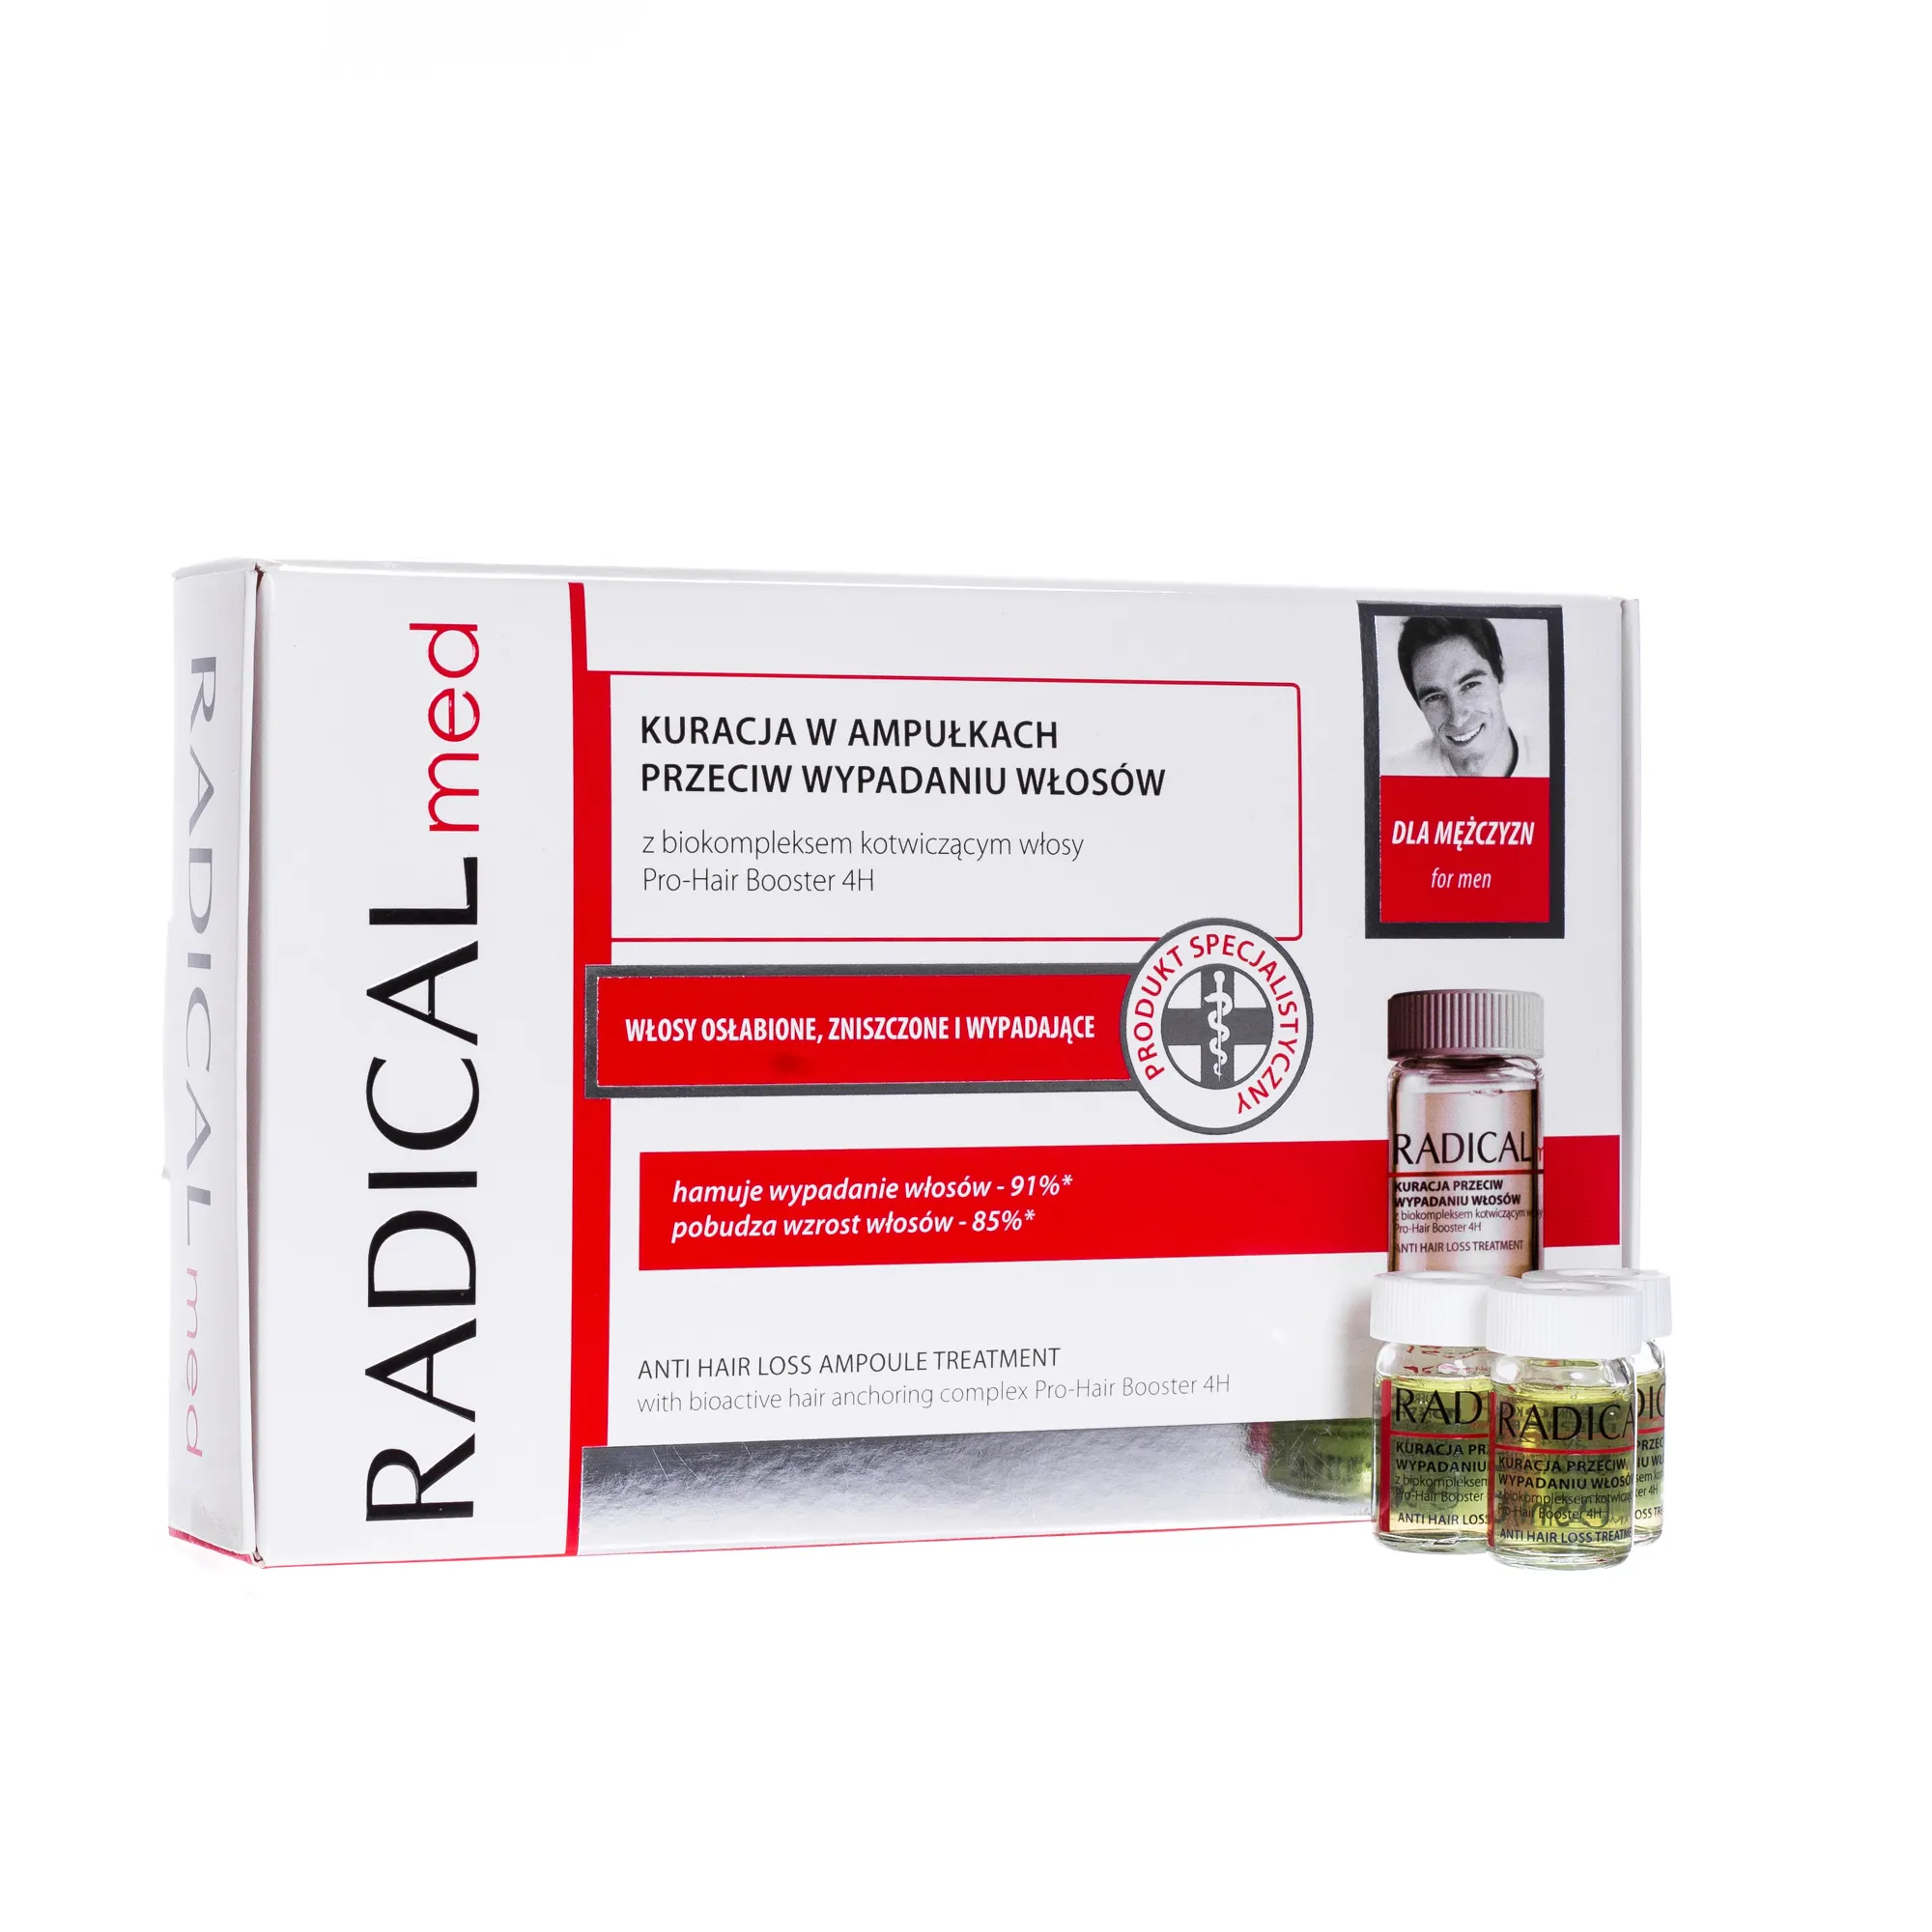 Radical Med Kuracja w ampułkach przeciw wypadaniu włosów dla mężczyzn , 15 amppułek po 5 ml